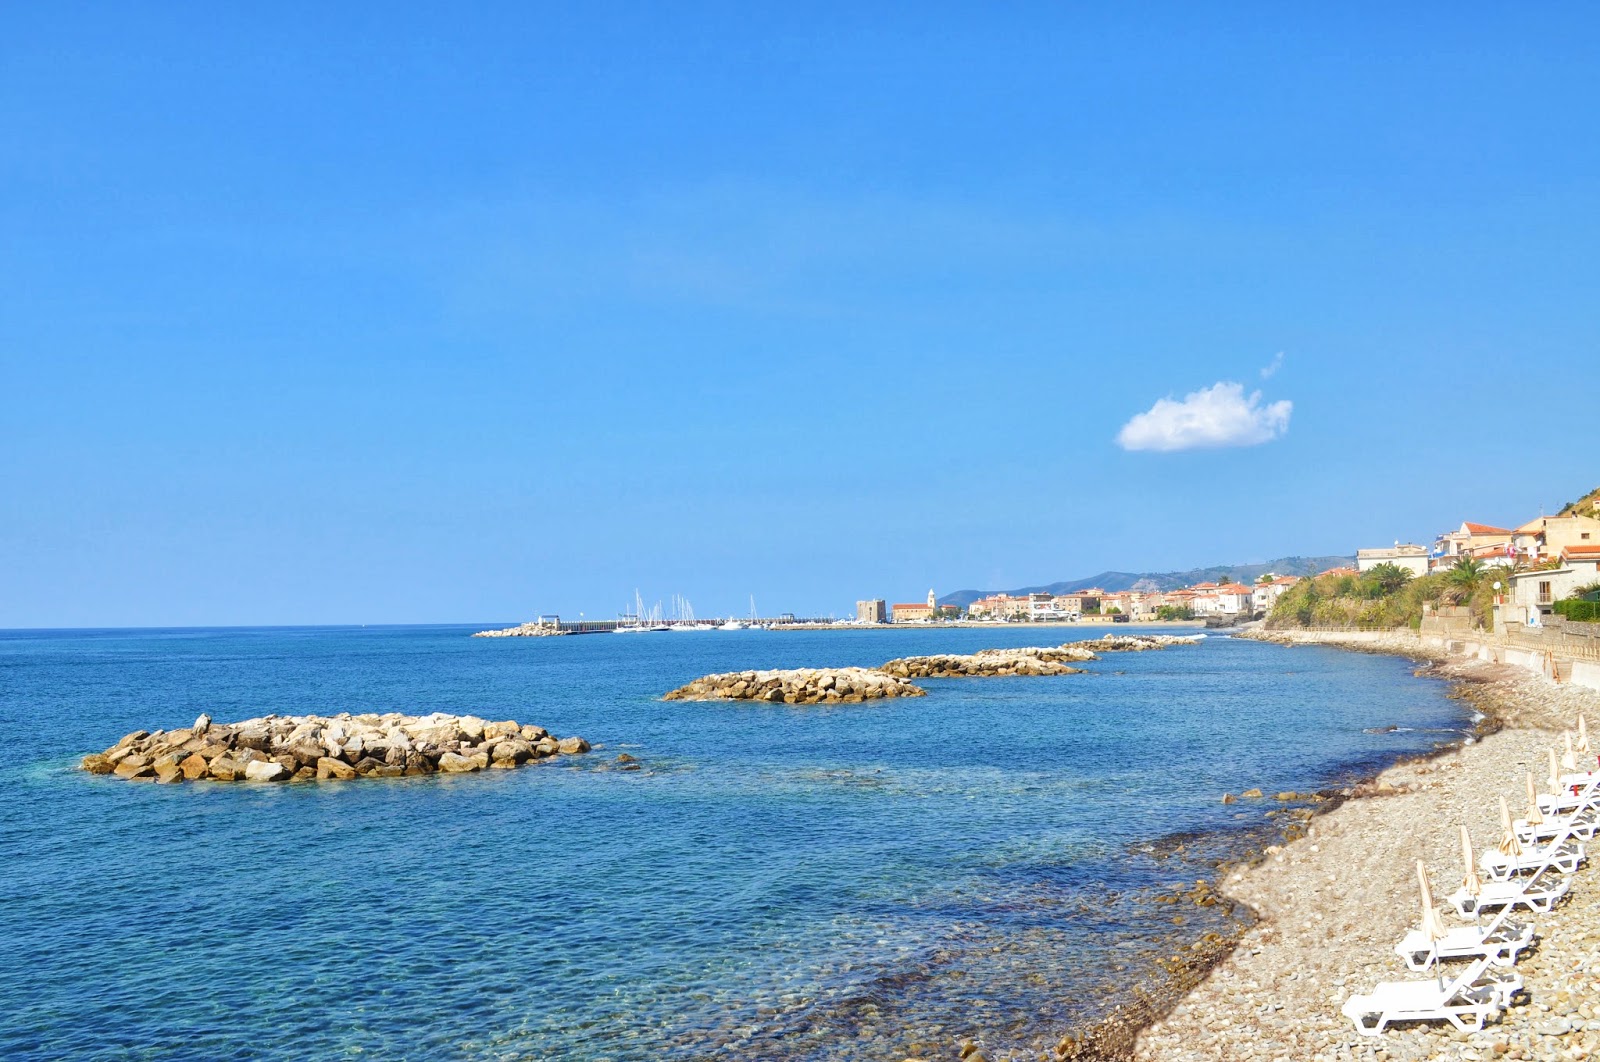 Acciaroli beach'in fotoğrafı kahverengi çakıl yüzey ile